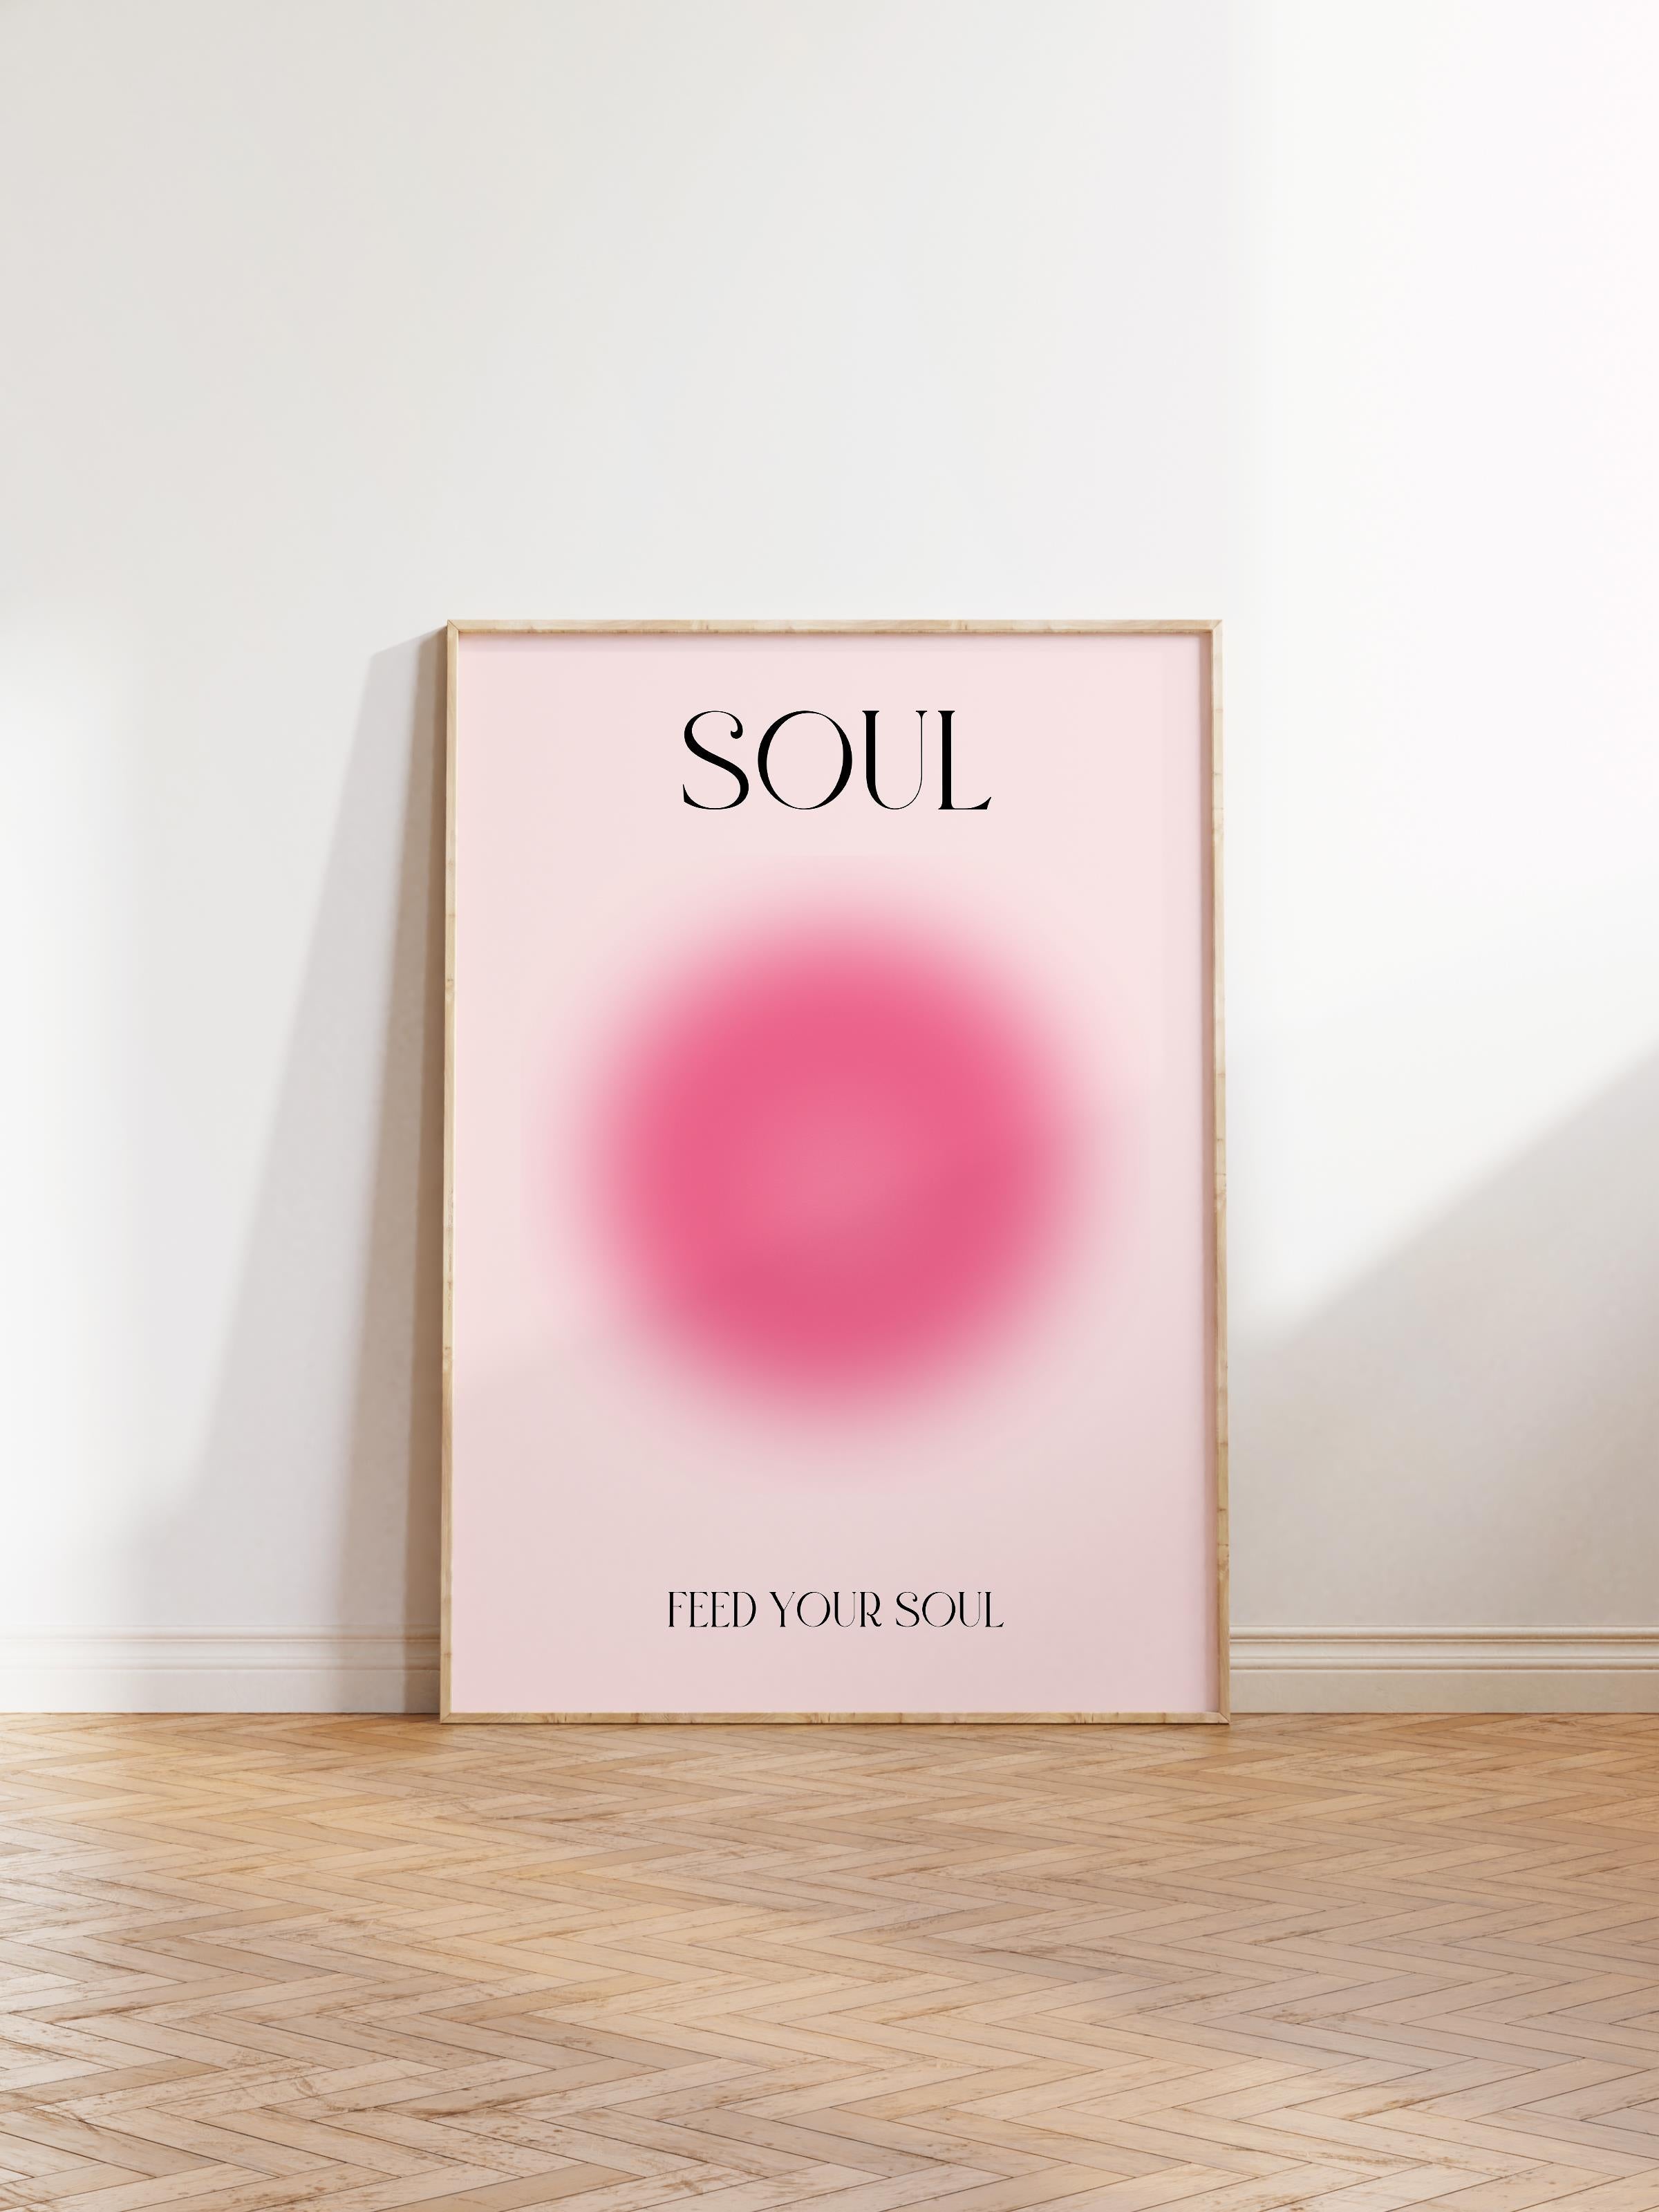 Çerçevesiz Poster, Aura Serisi NO:53 - Feed Your Soul, Melek Numaraları, Renkli Poster